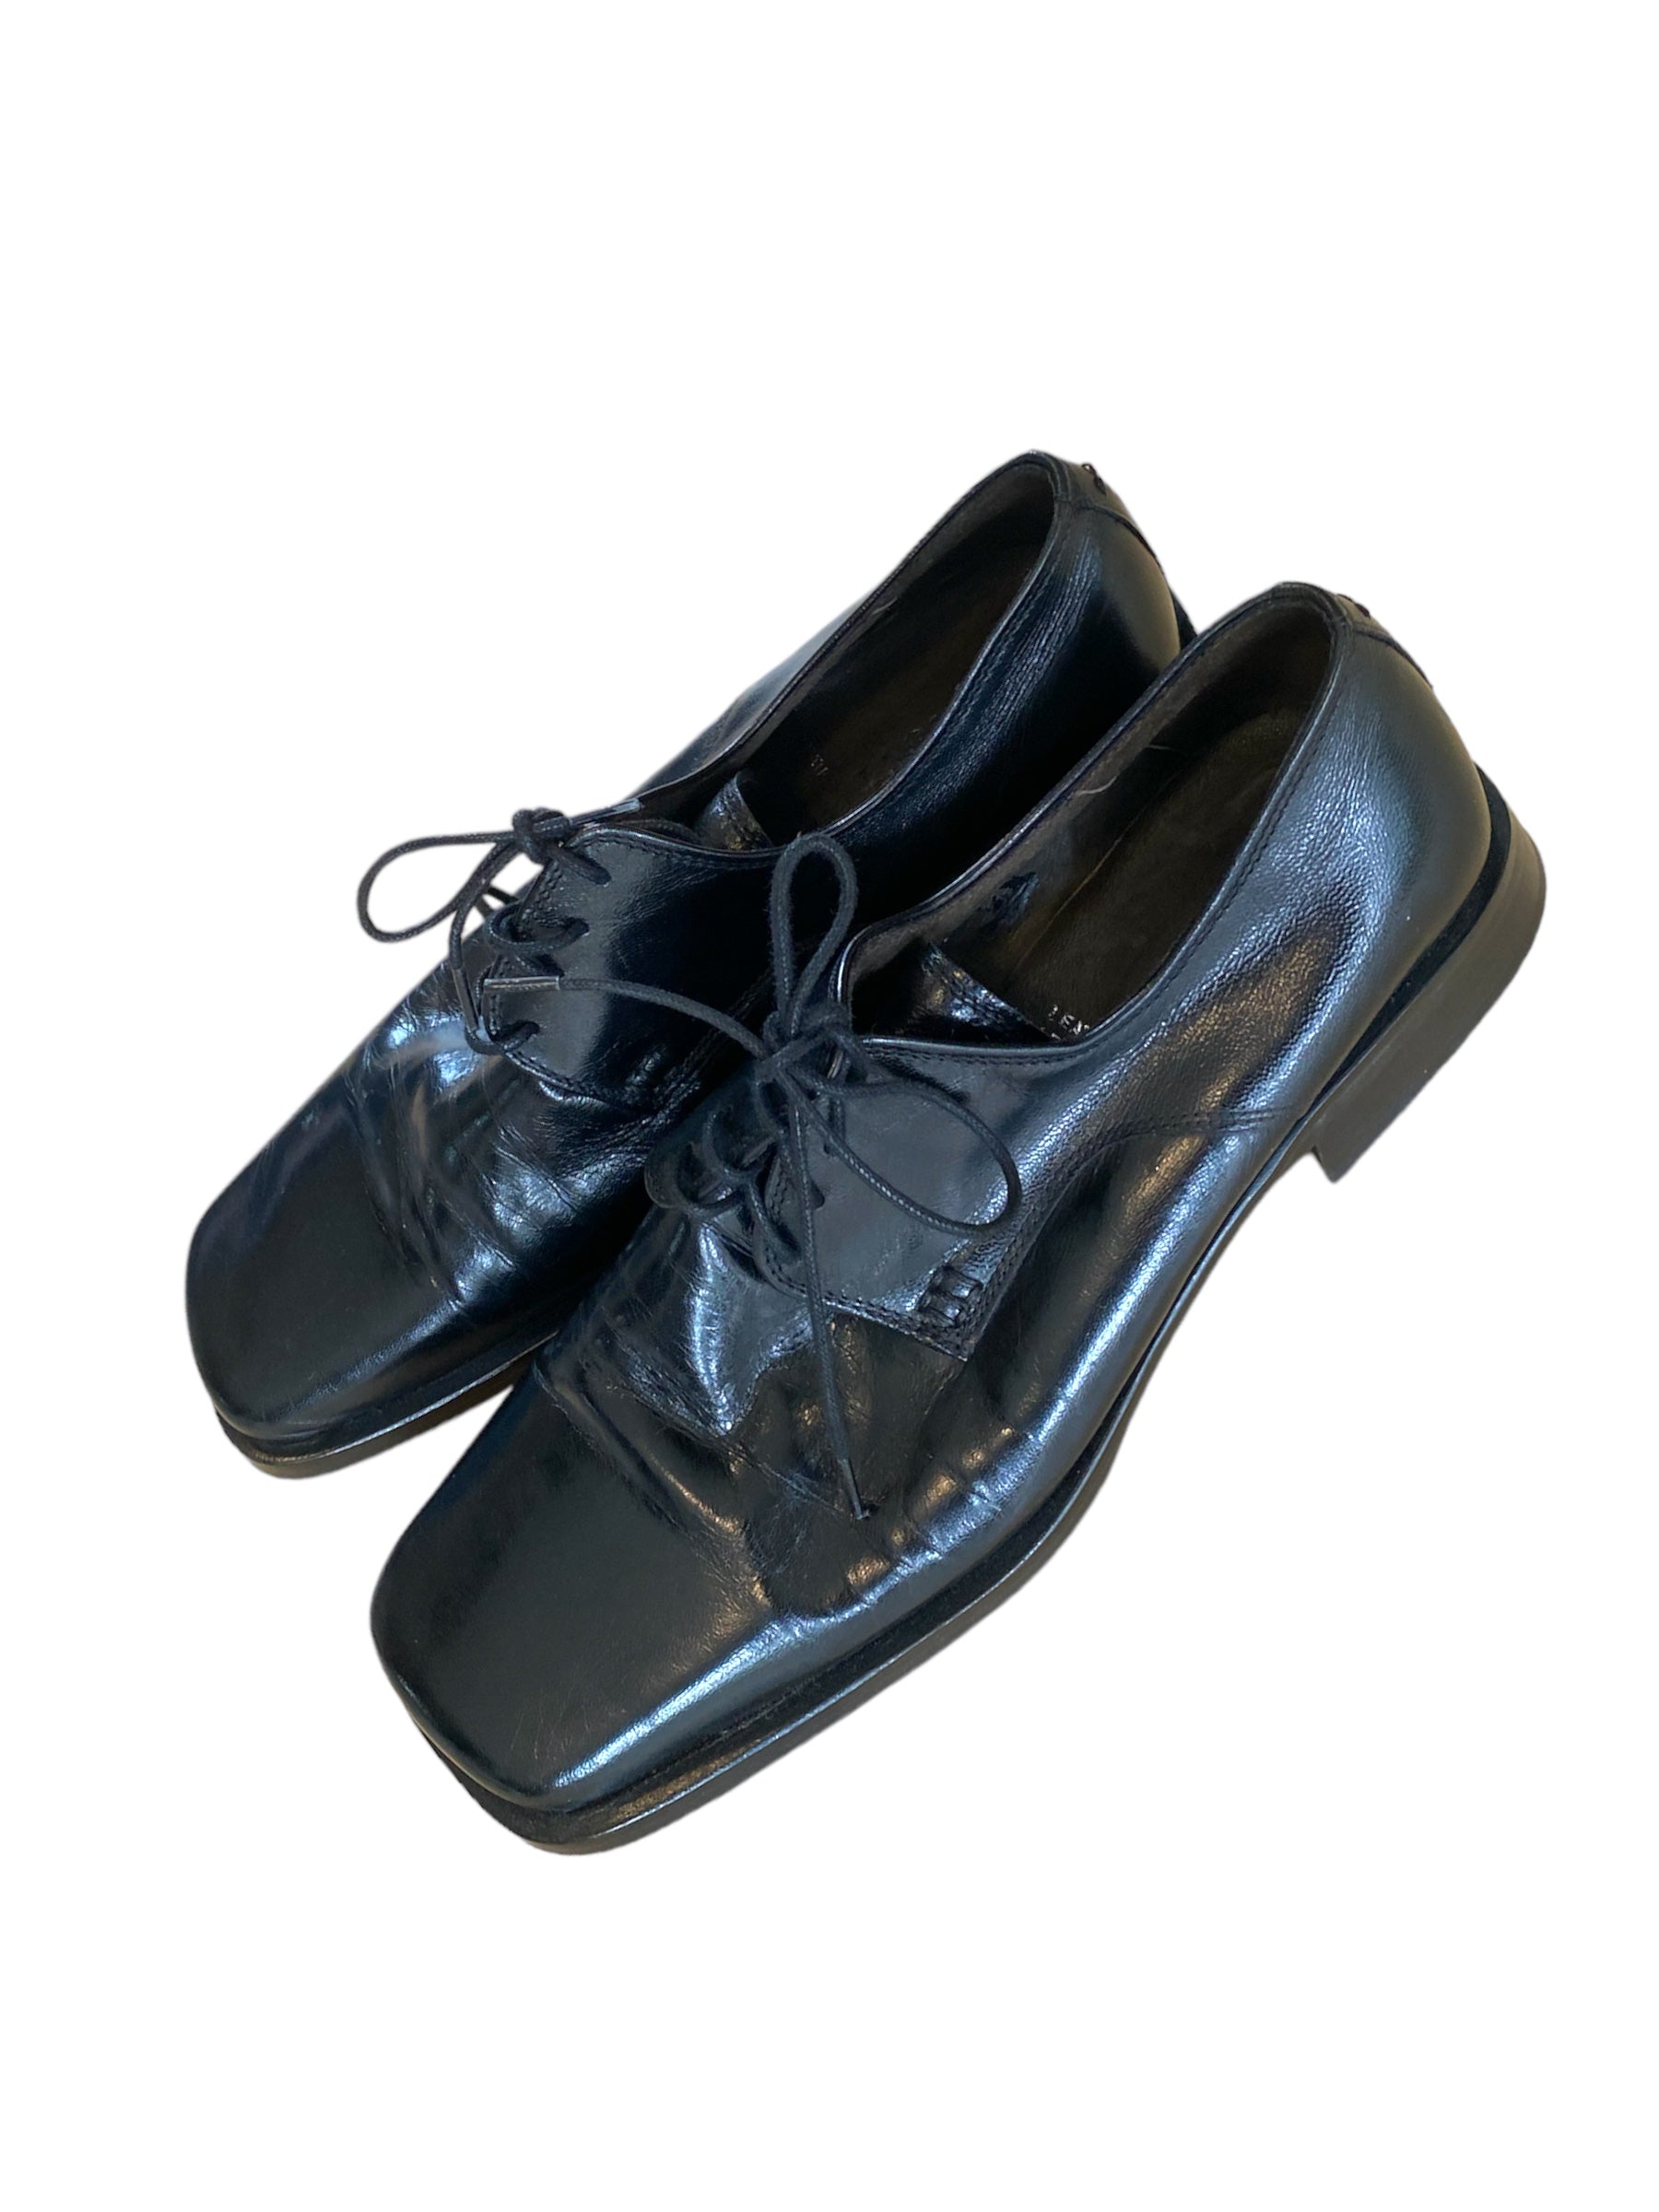 L’Stony Leather Square Toe Shoe | Size 39